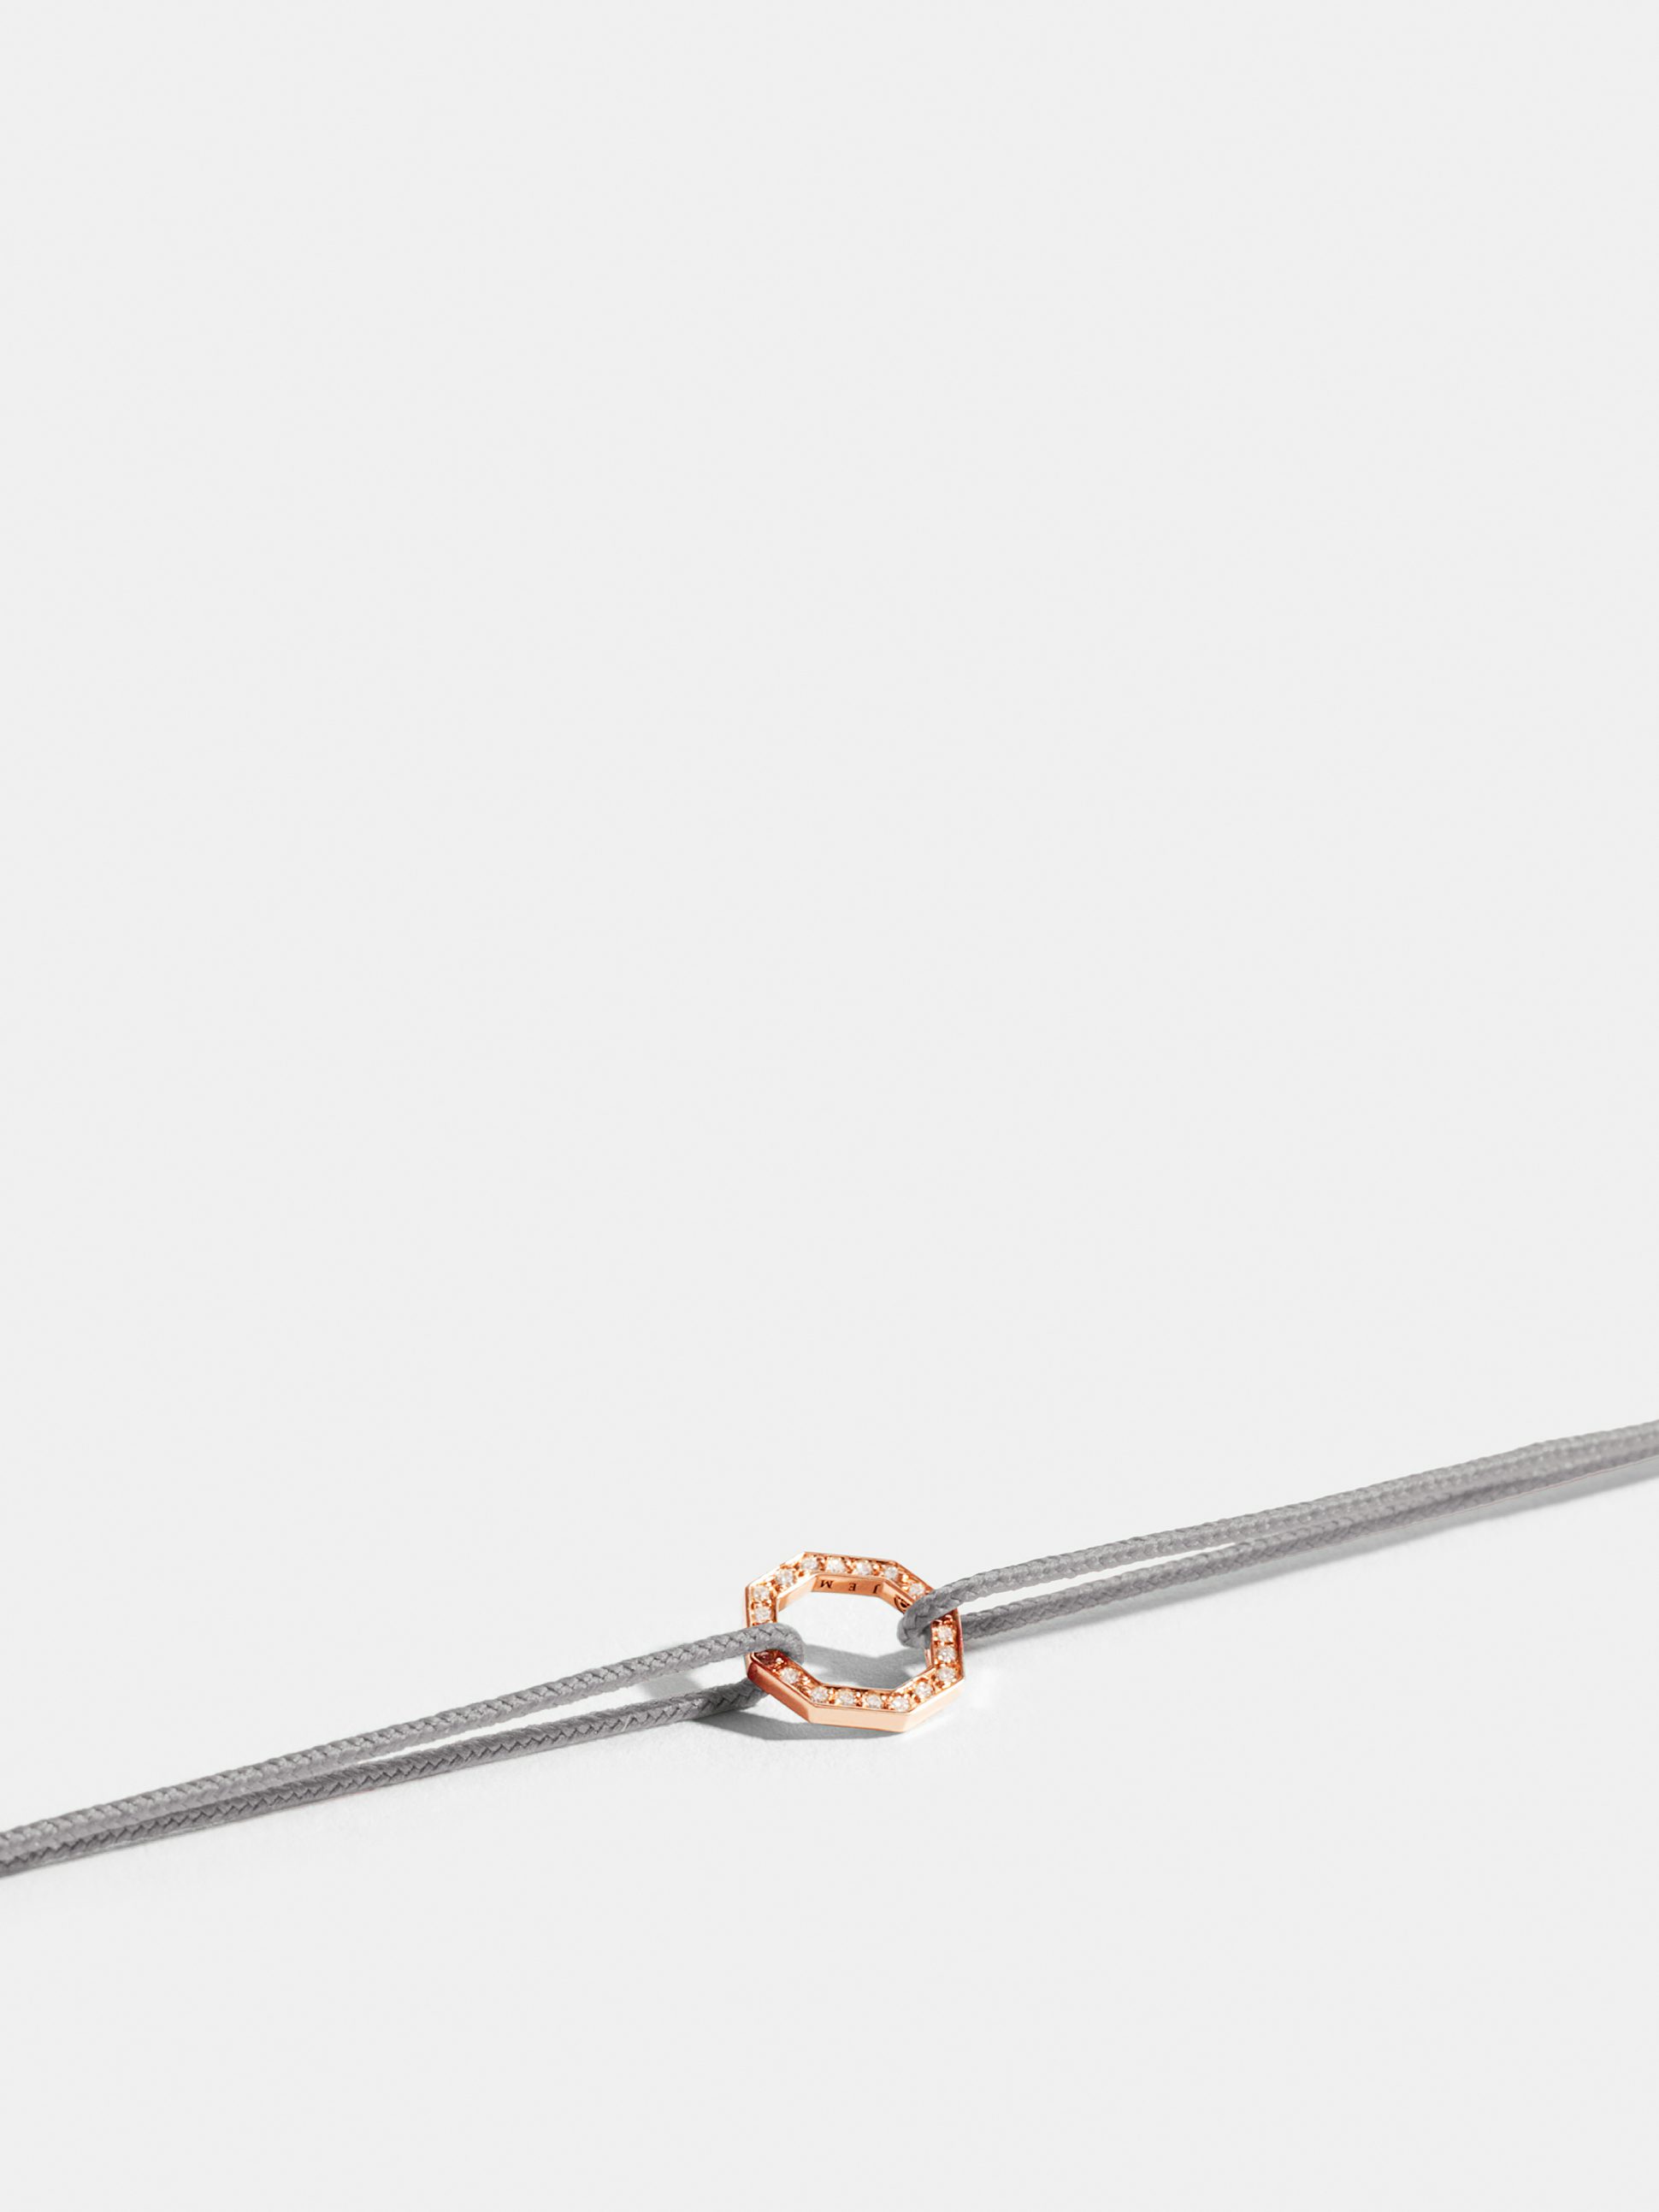 Motif Octogone en Or rose éthique 18 carats certifié Fairmined et pavé de diamants de synthèse, sur cordon gris perlé.